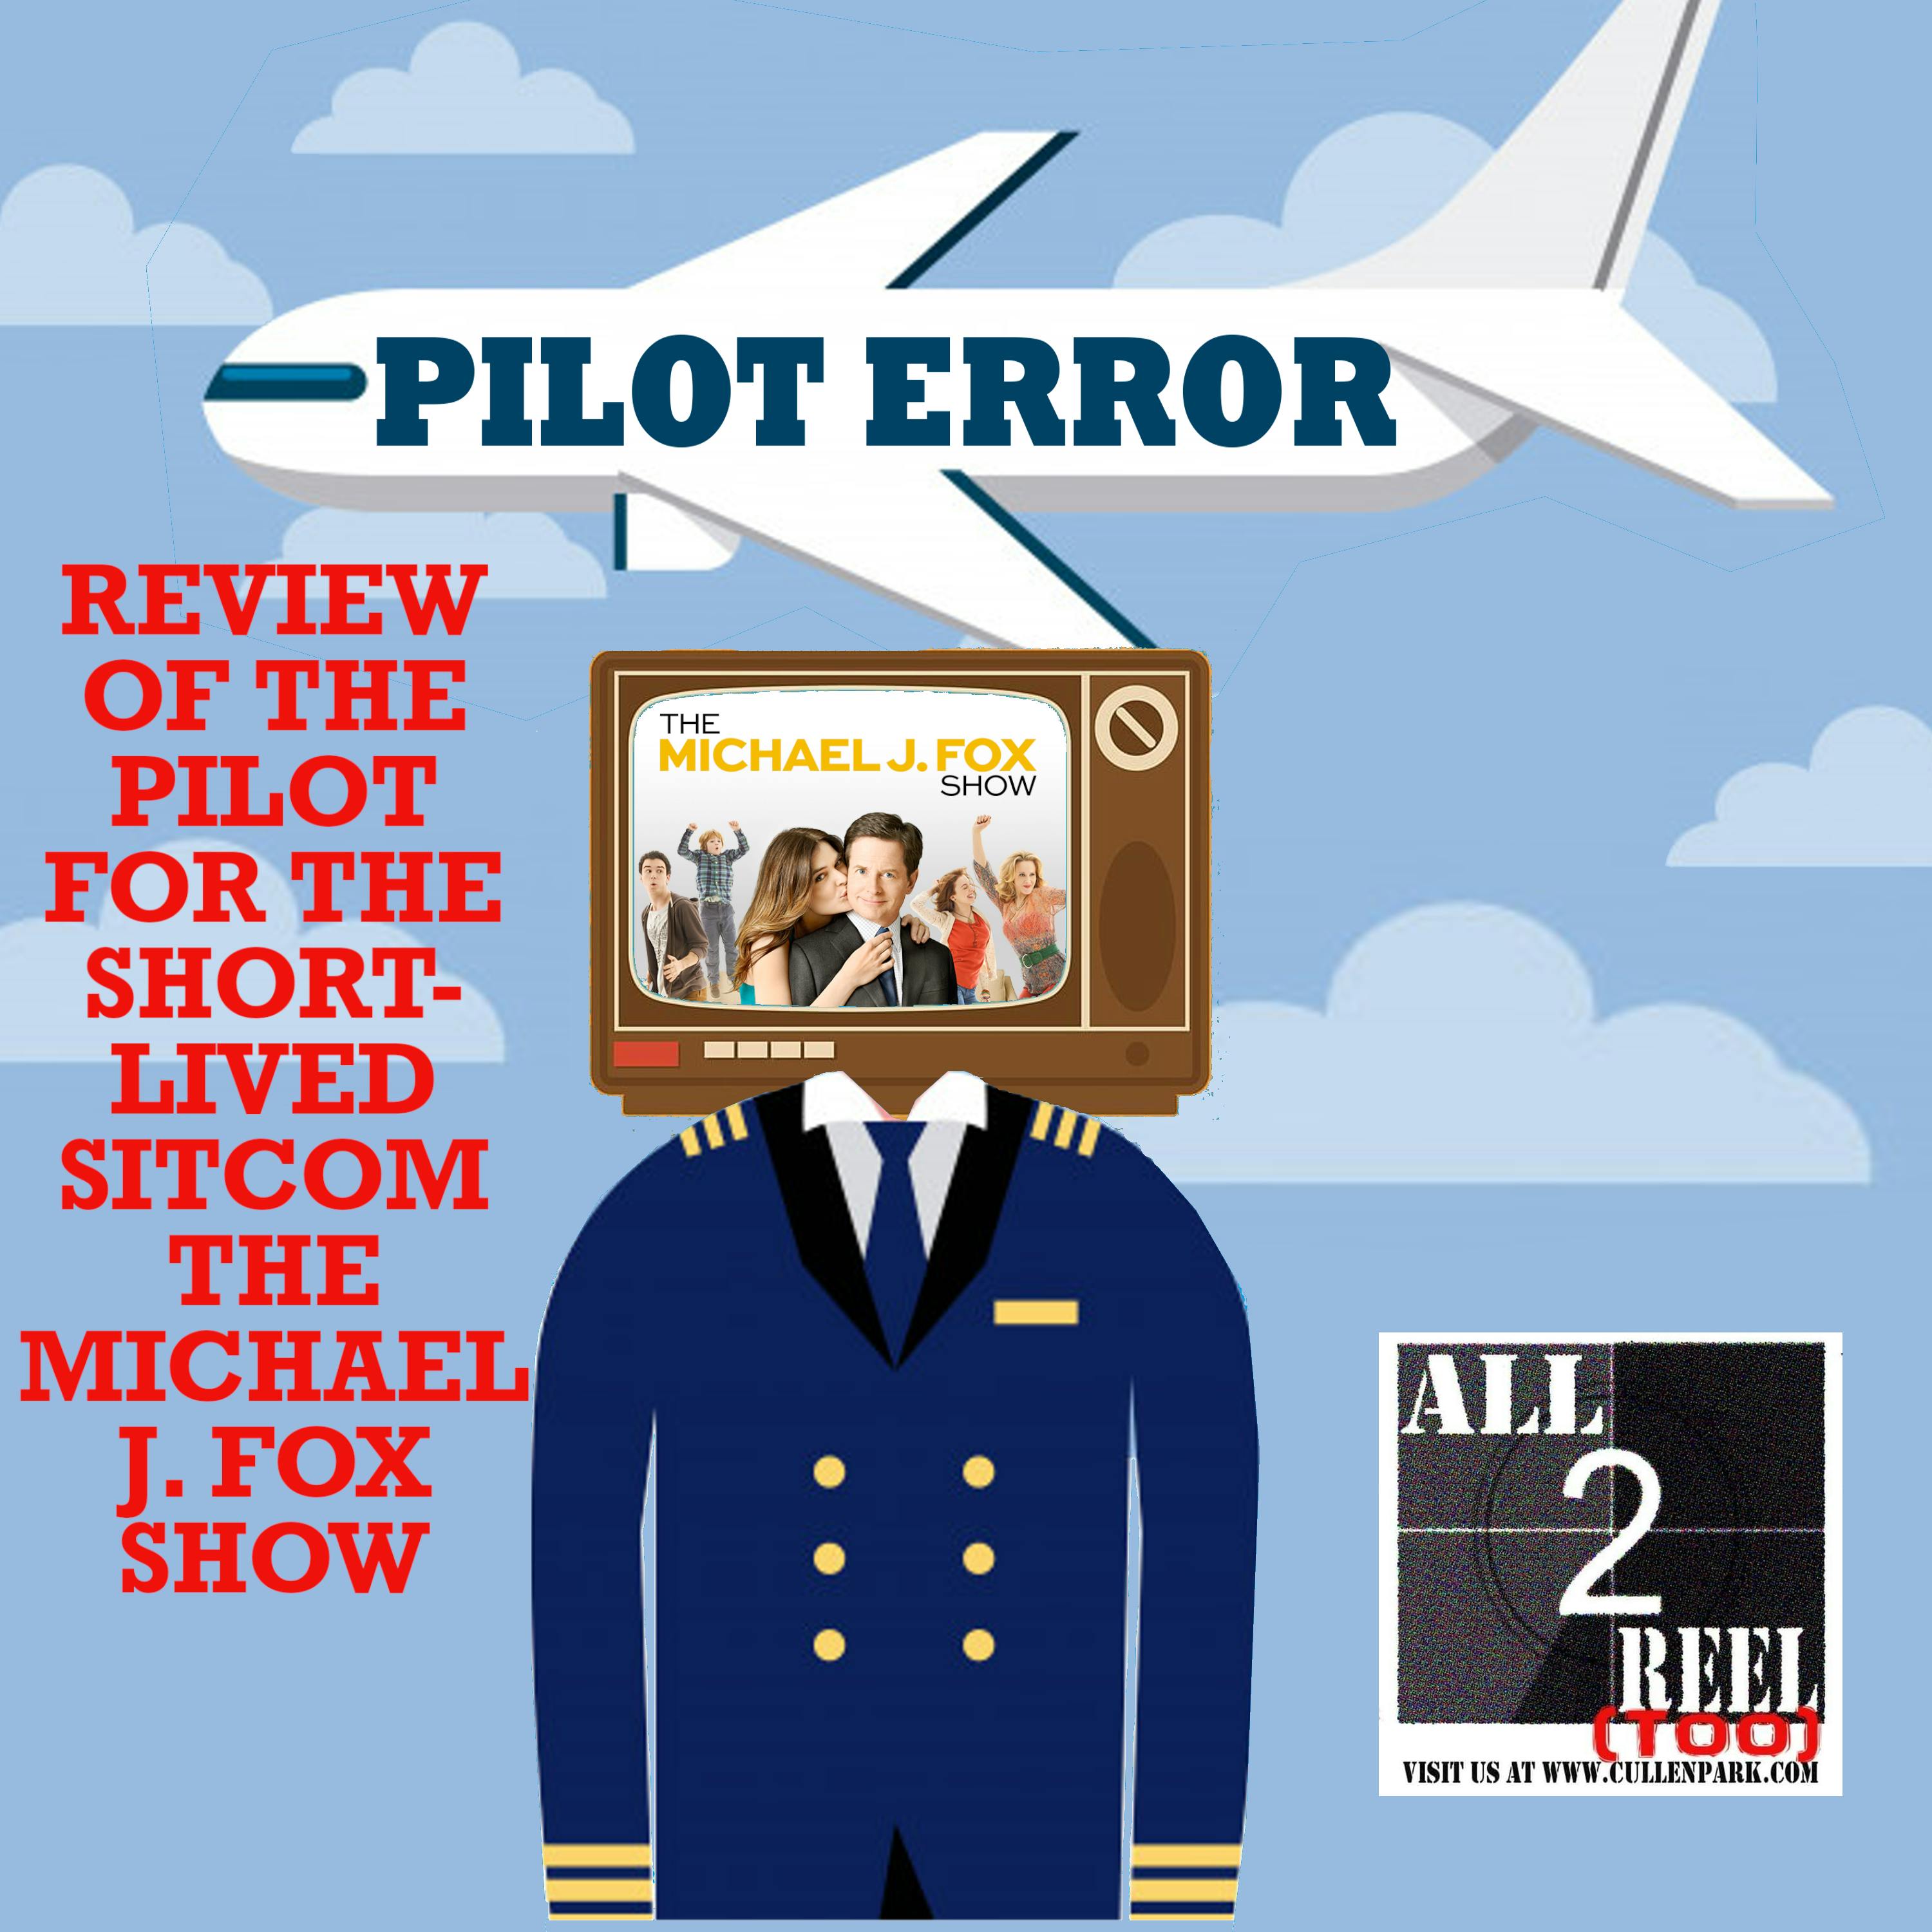 The Michael J. Fox Show (2013) - PILOT ERROR REVIEW